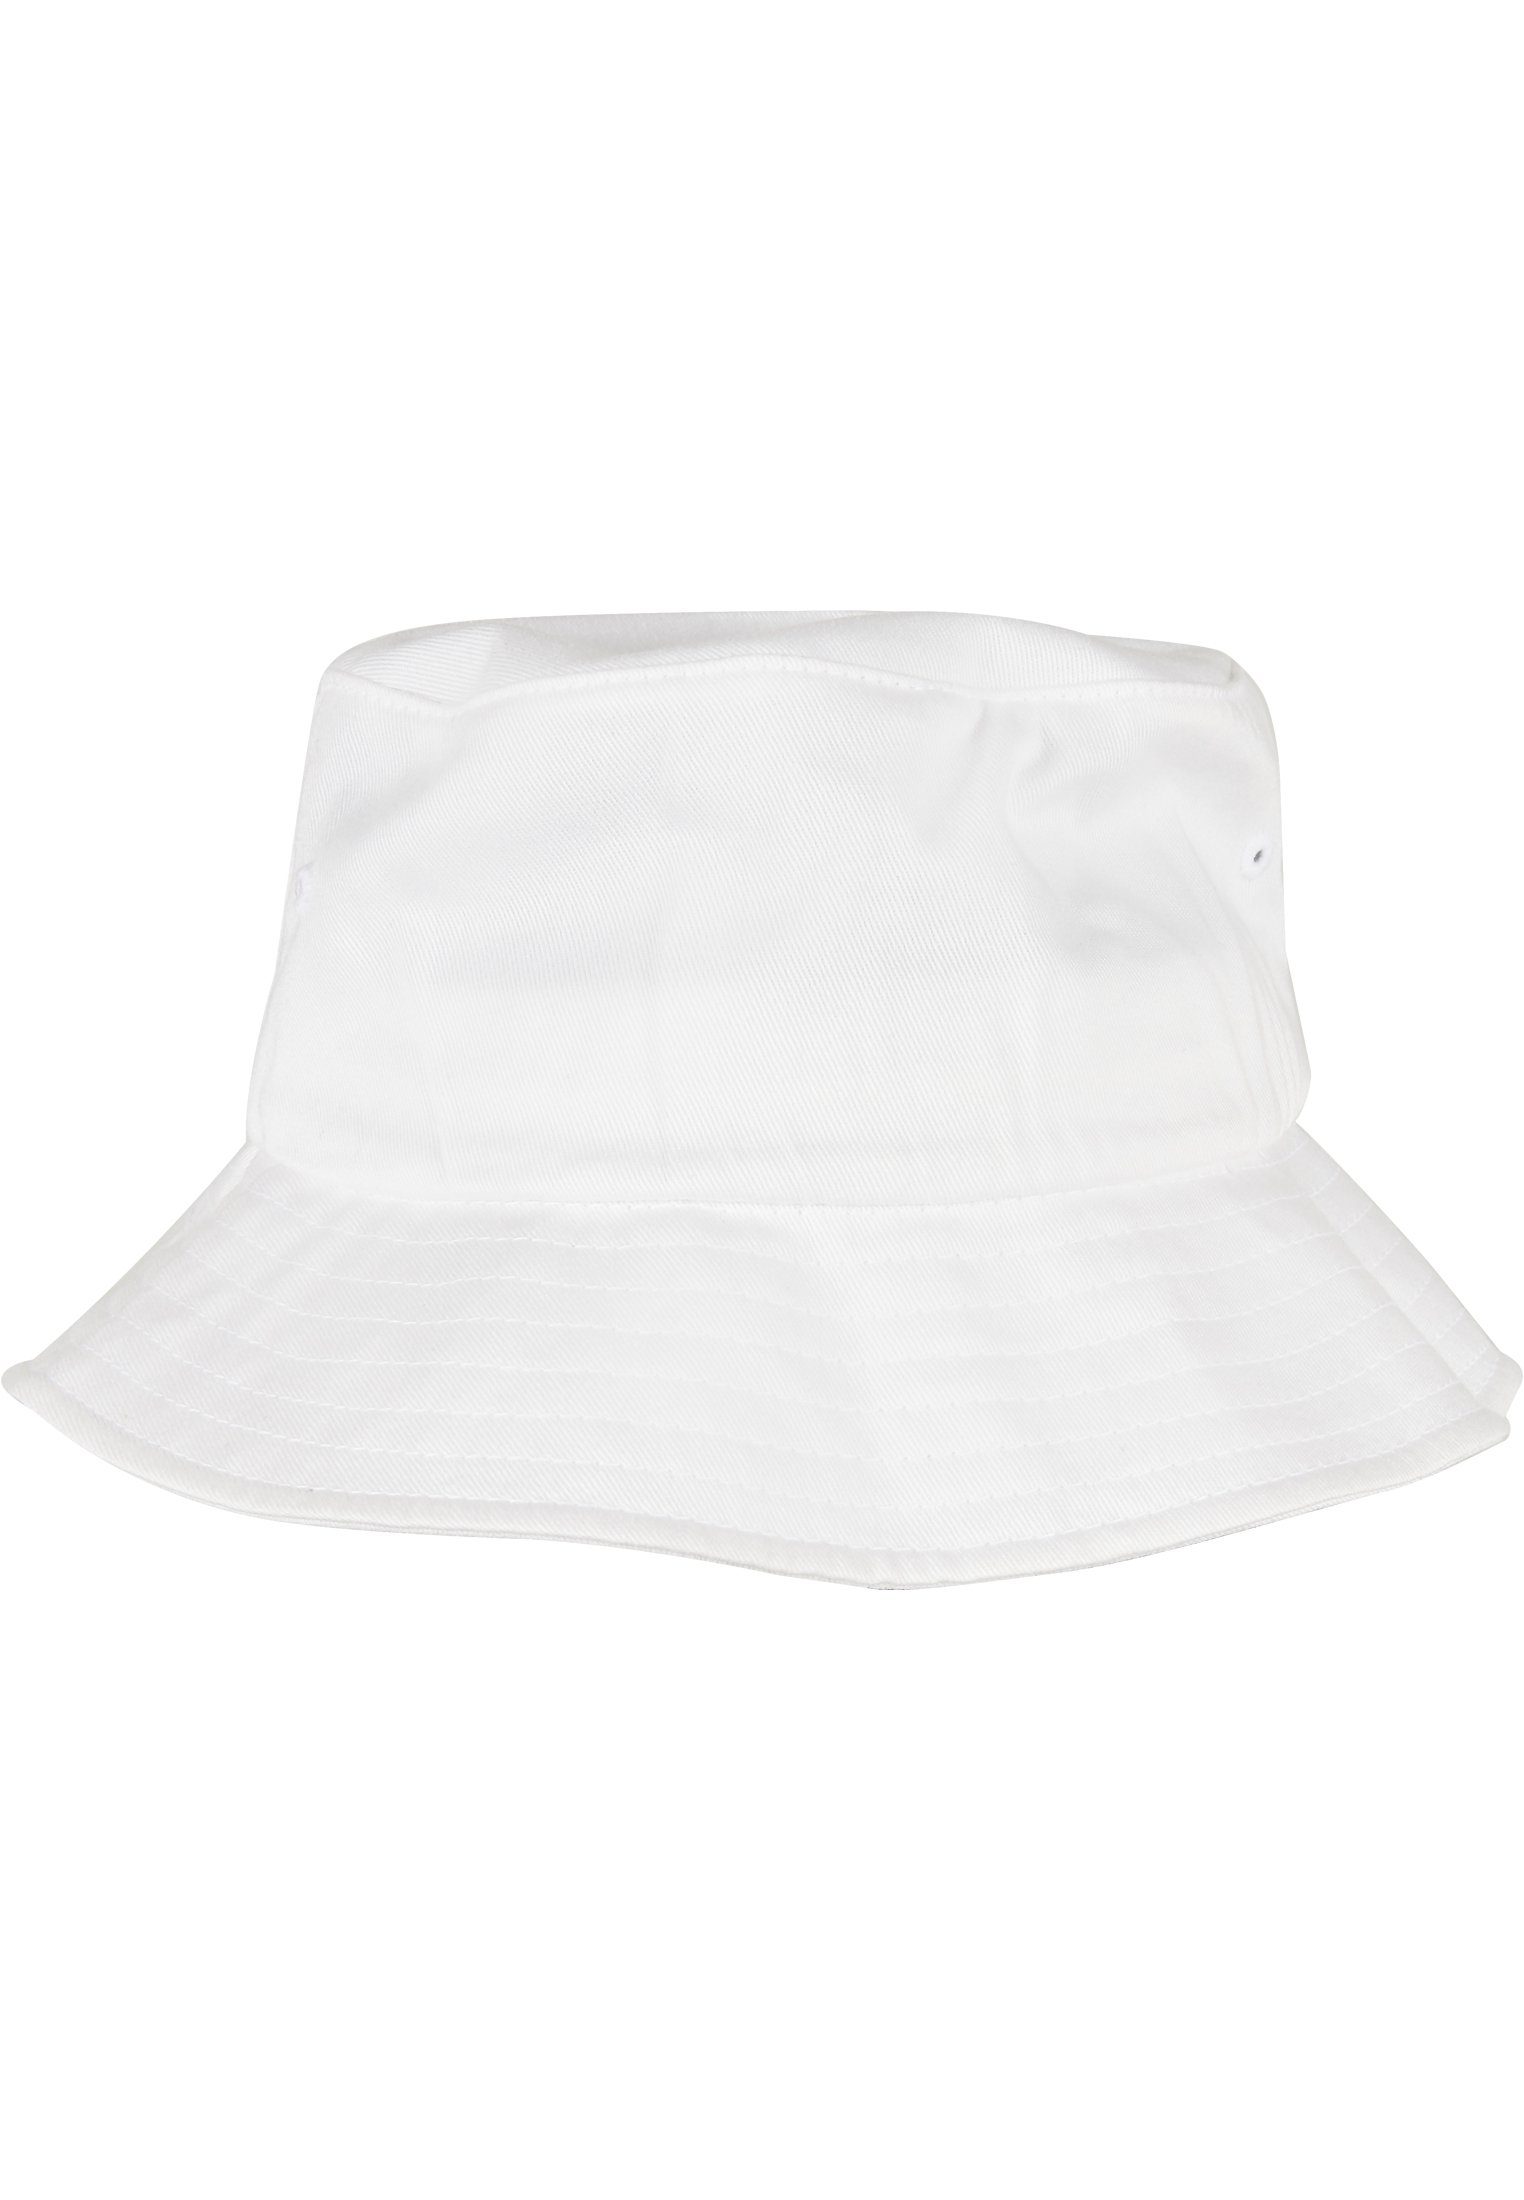 Organic Hat white Bucket Accessoires Flex Cap Flexfit Cotton